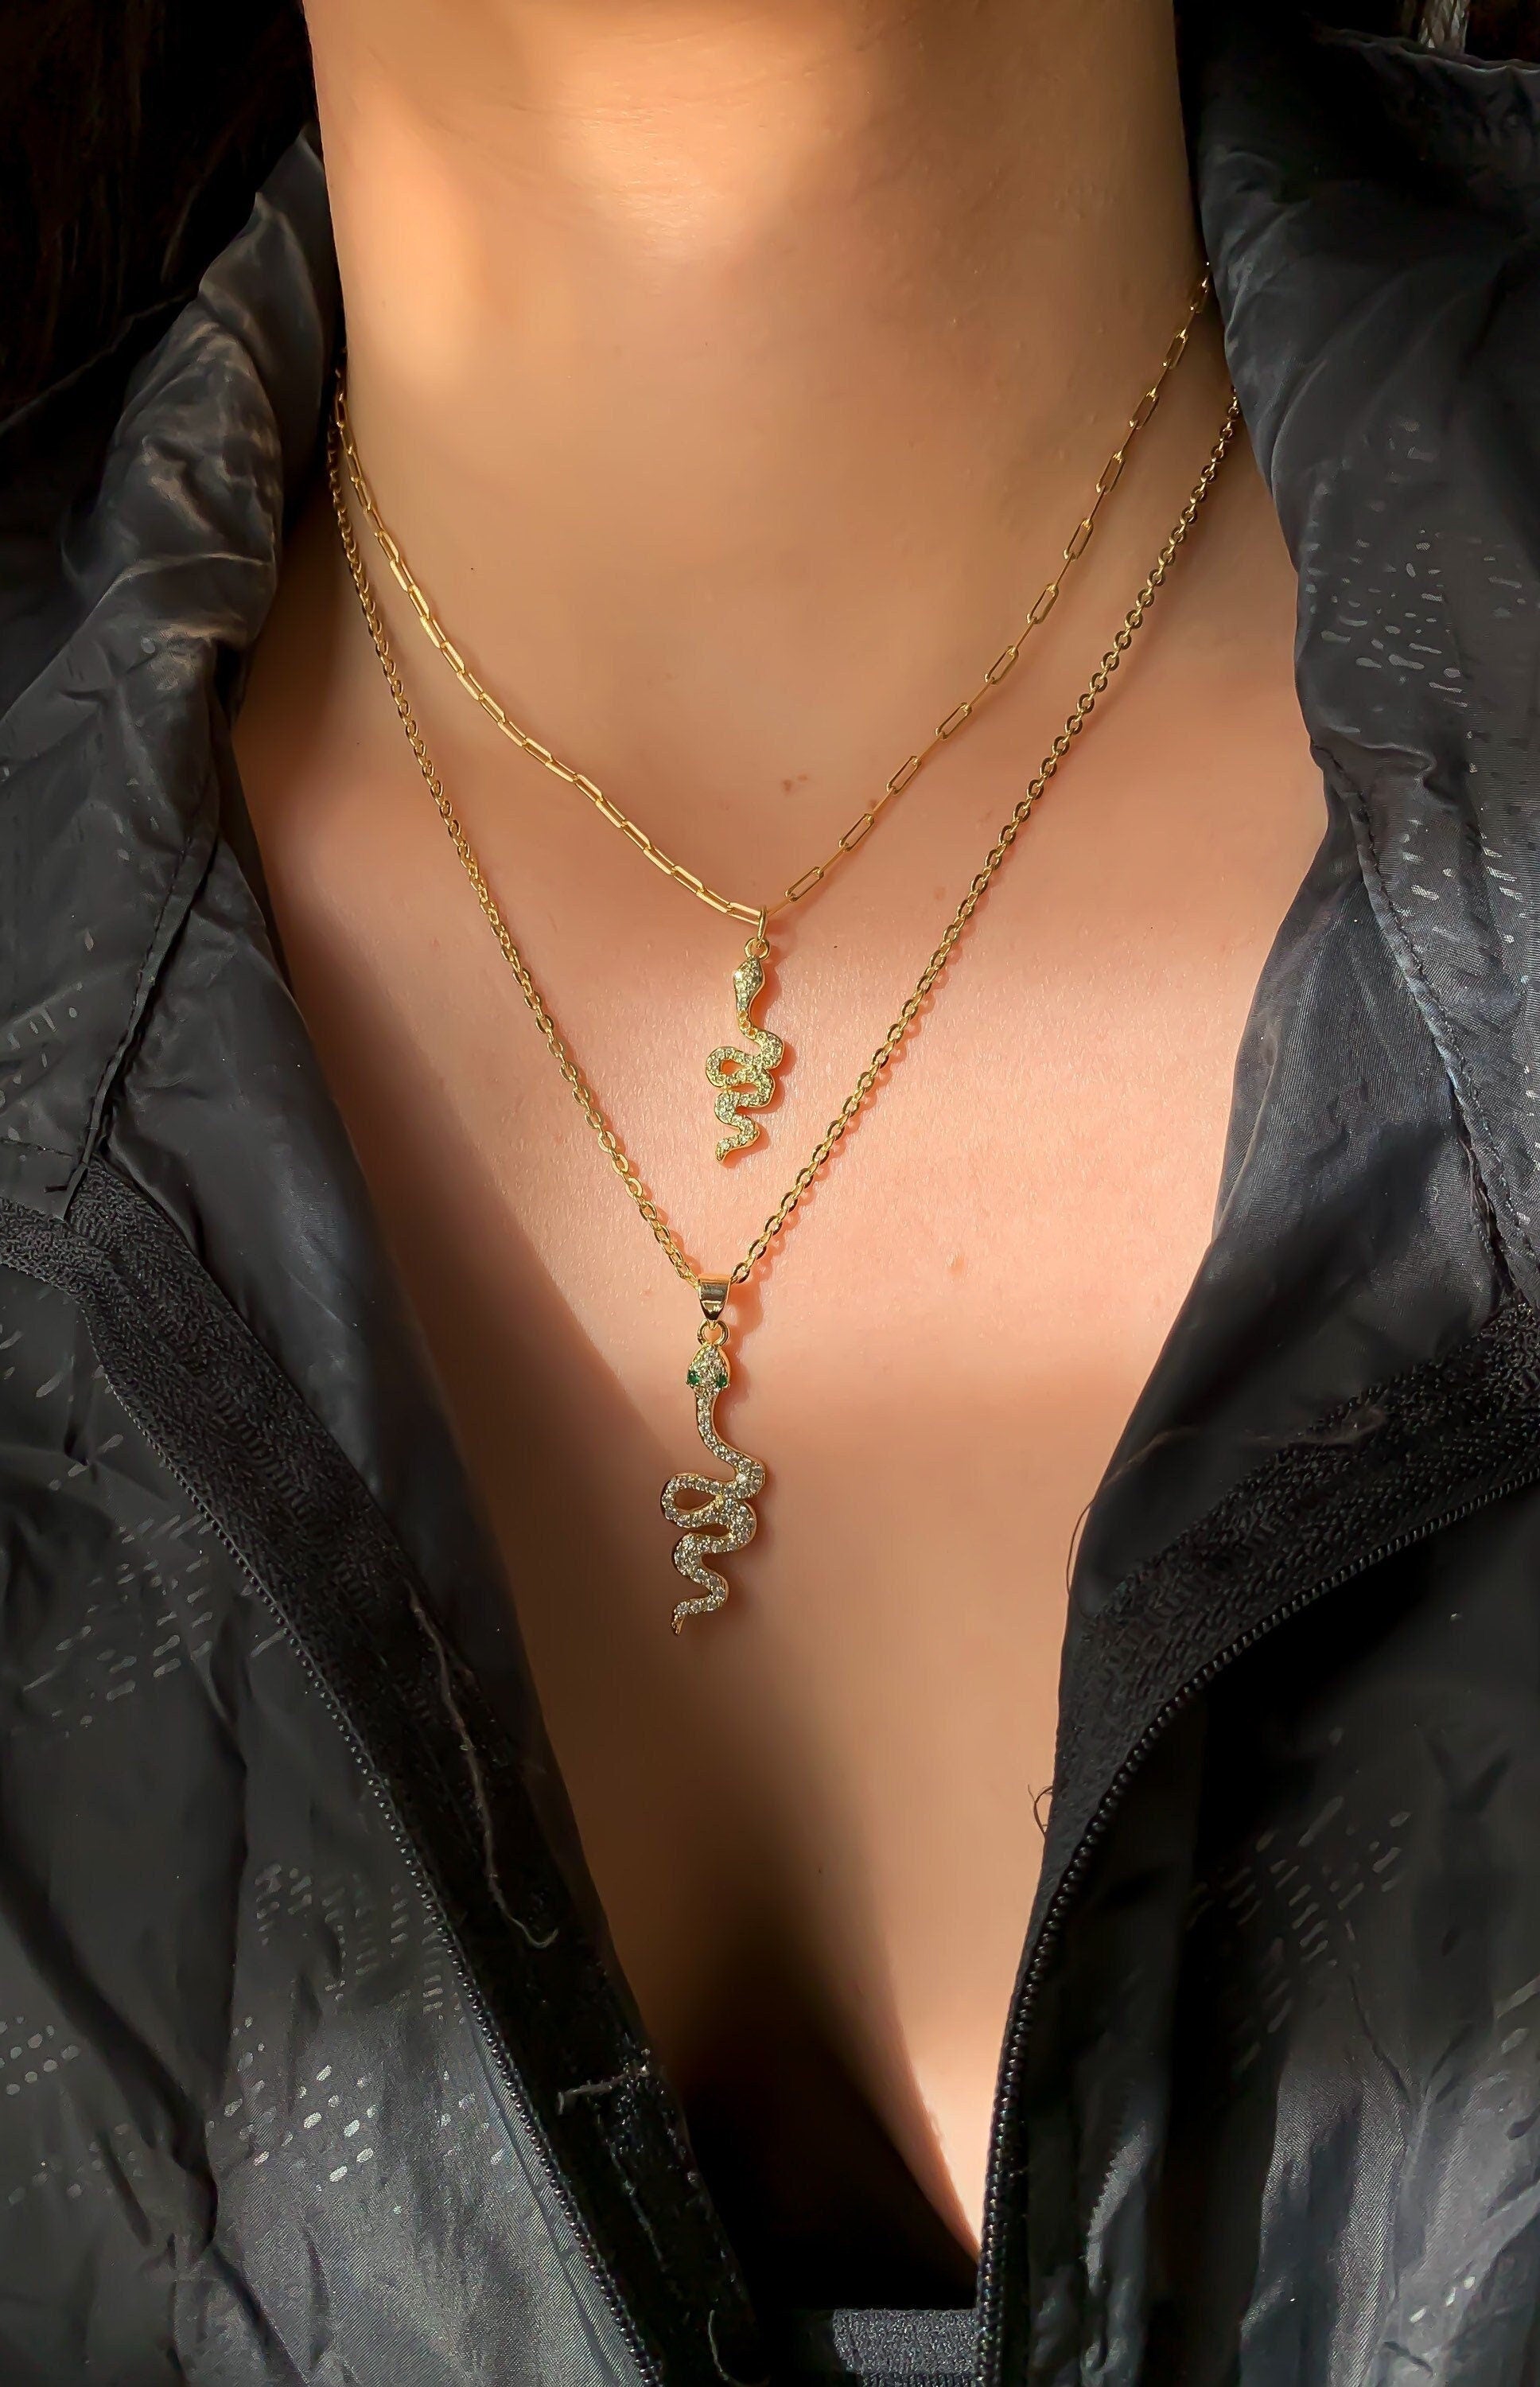 Gold filled snake necklaces